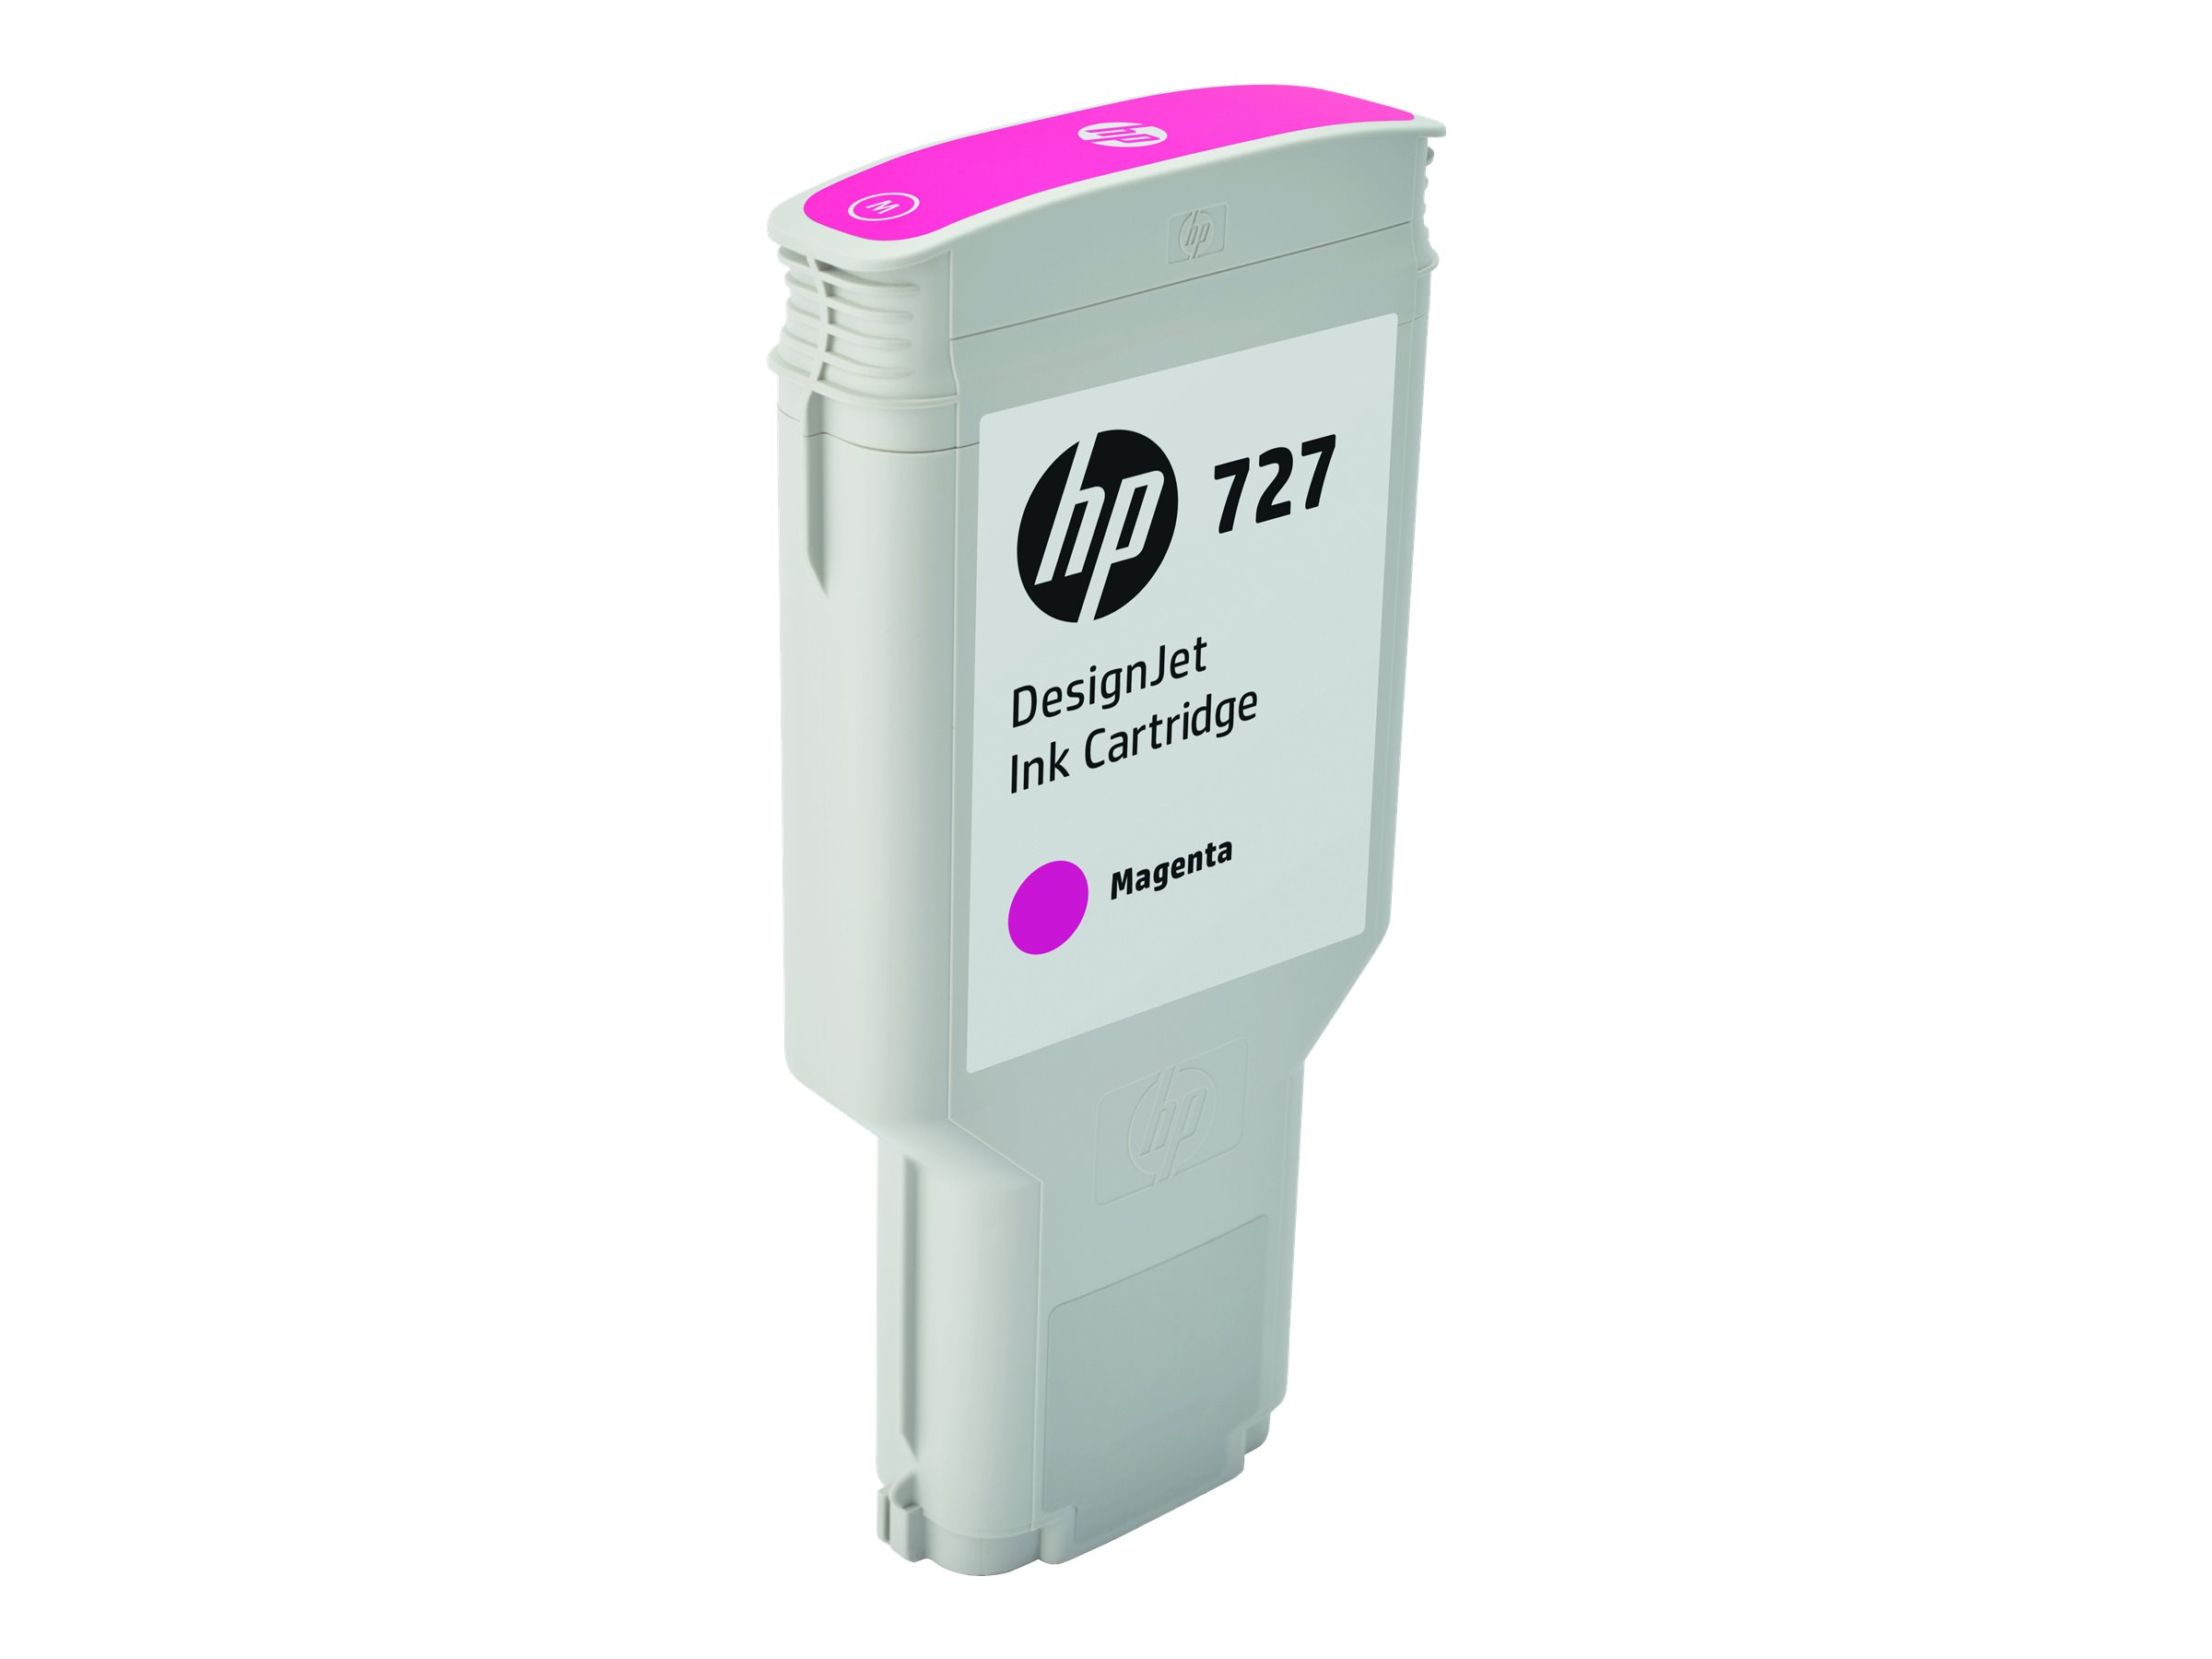 HP 727 - 300 ml - haute capacité - magenta - original - DesignJet - cartouche d'encre - pour DesignJet T1500, T1530, T2500, T2530, T920, T930 - F9J77A - Cartouches d'imprimante